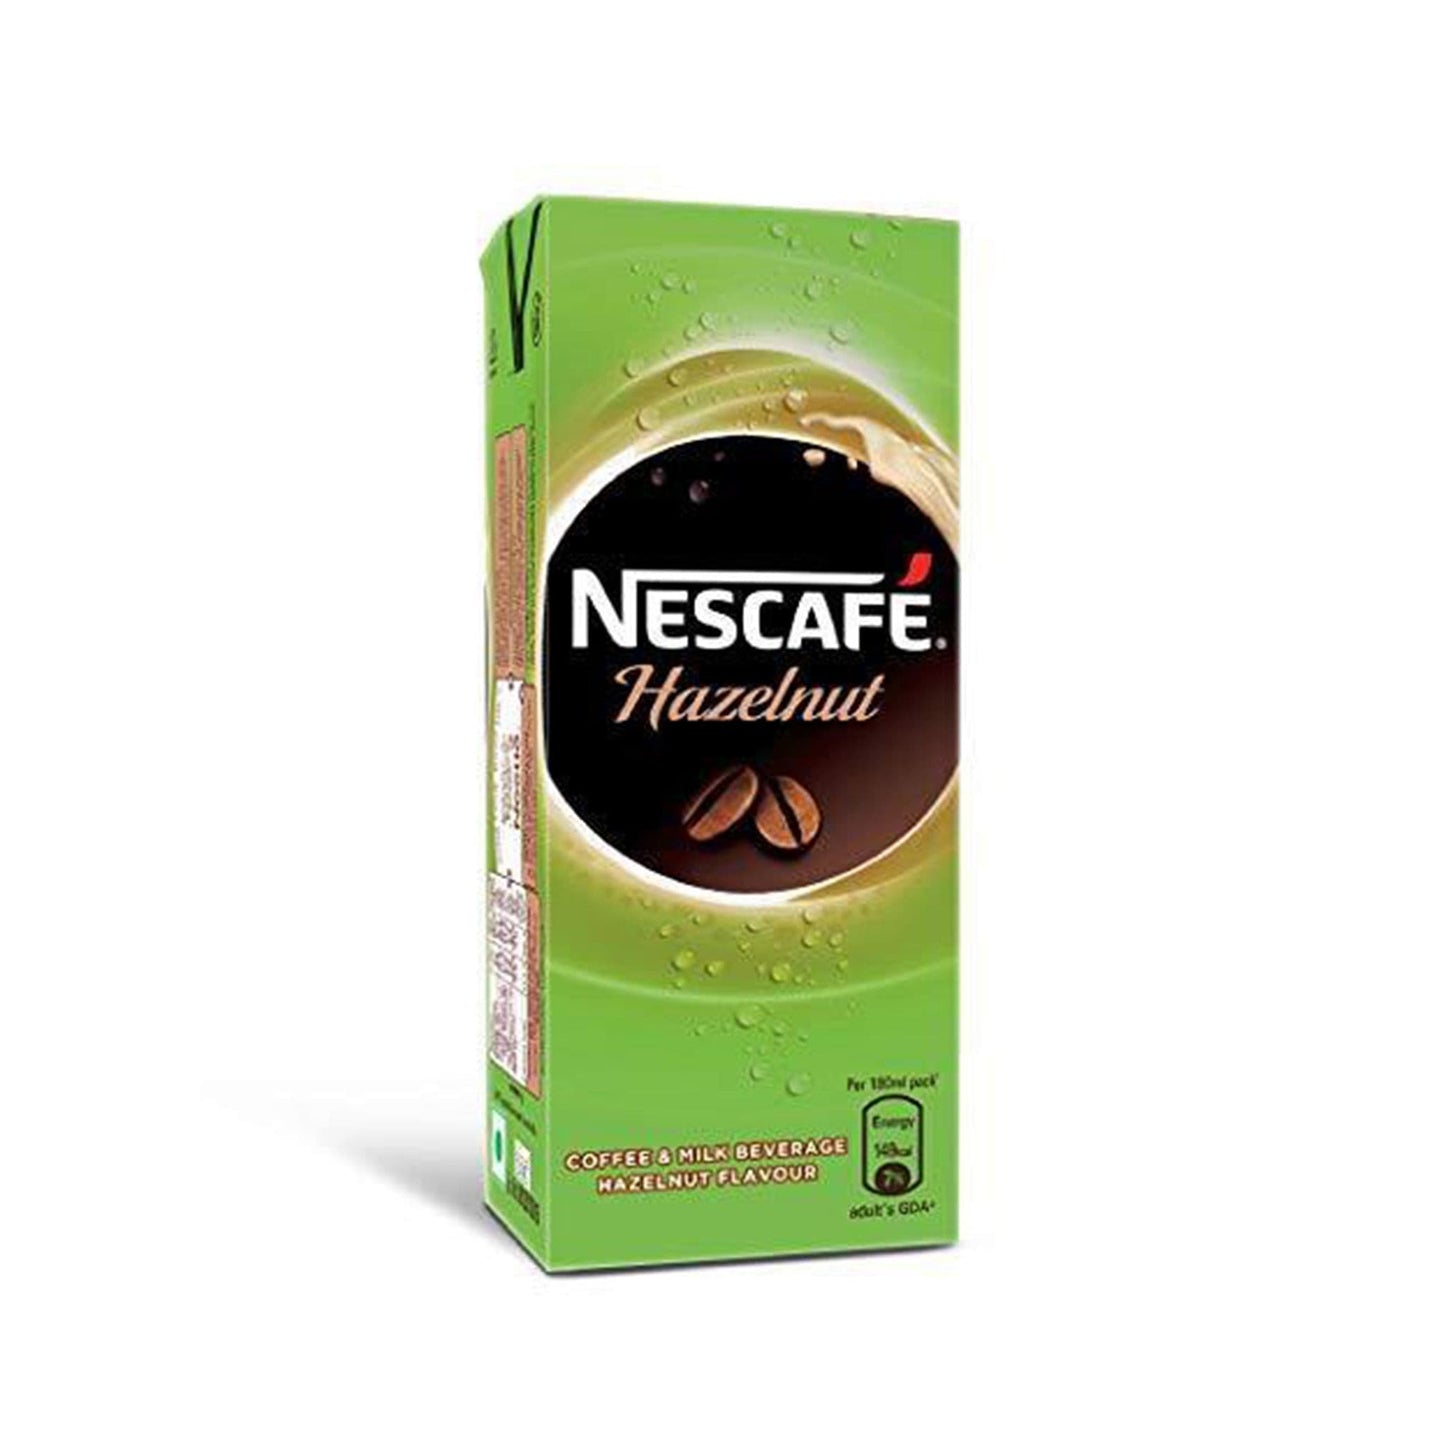 Nescafe Hazelnut Cold Coffee.